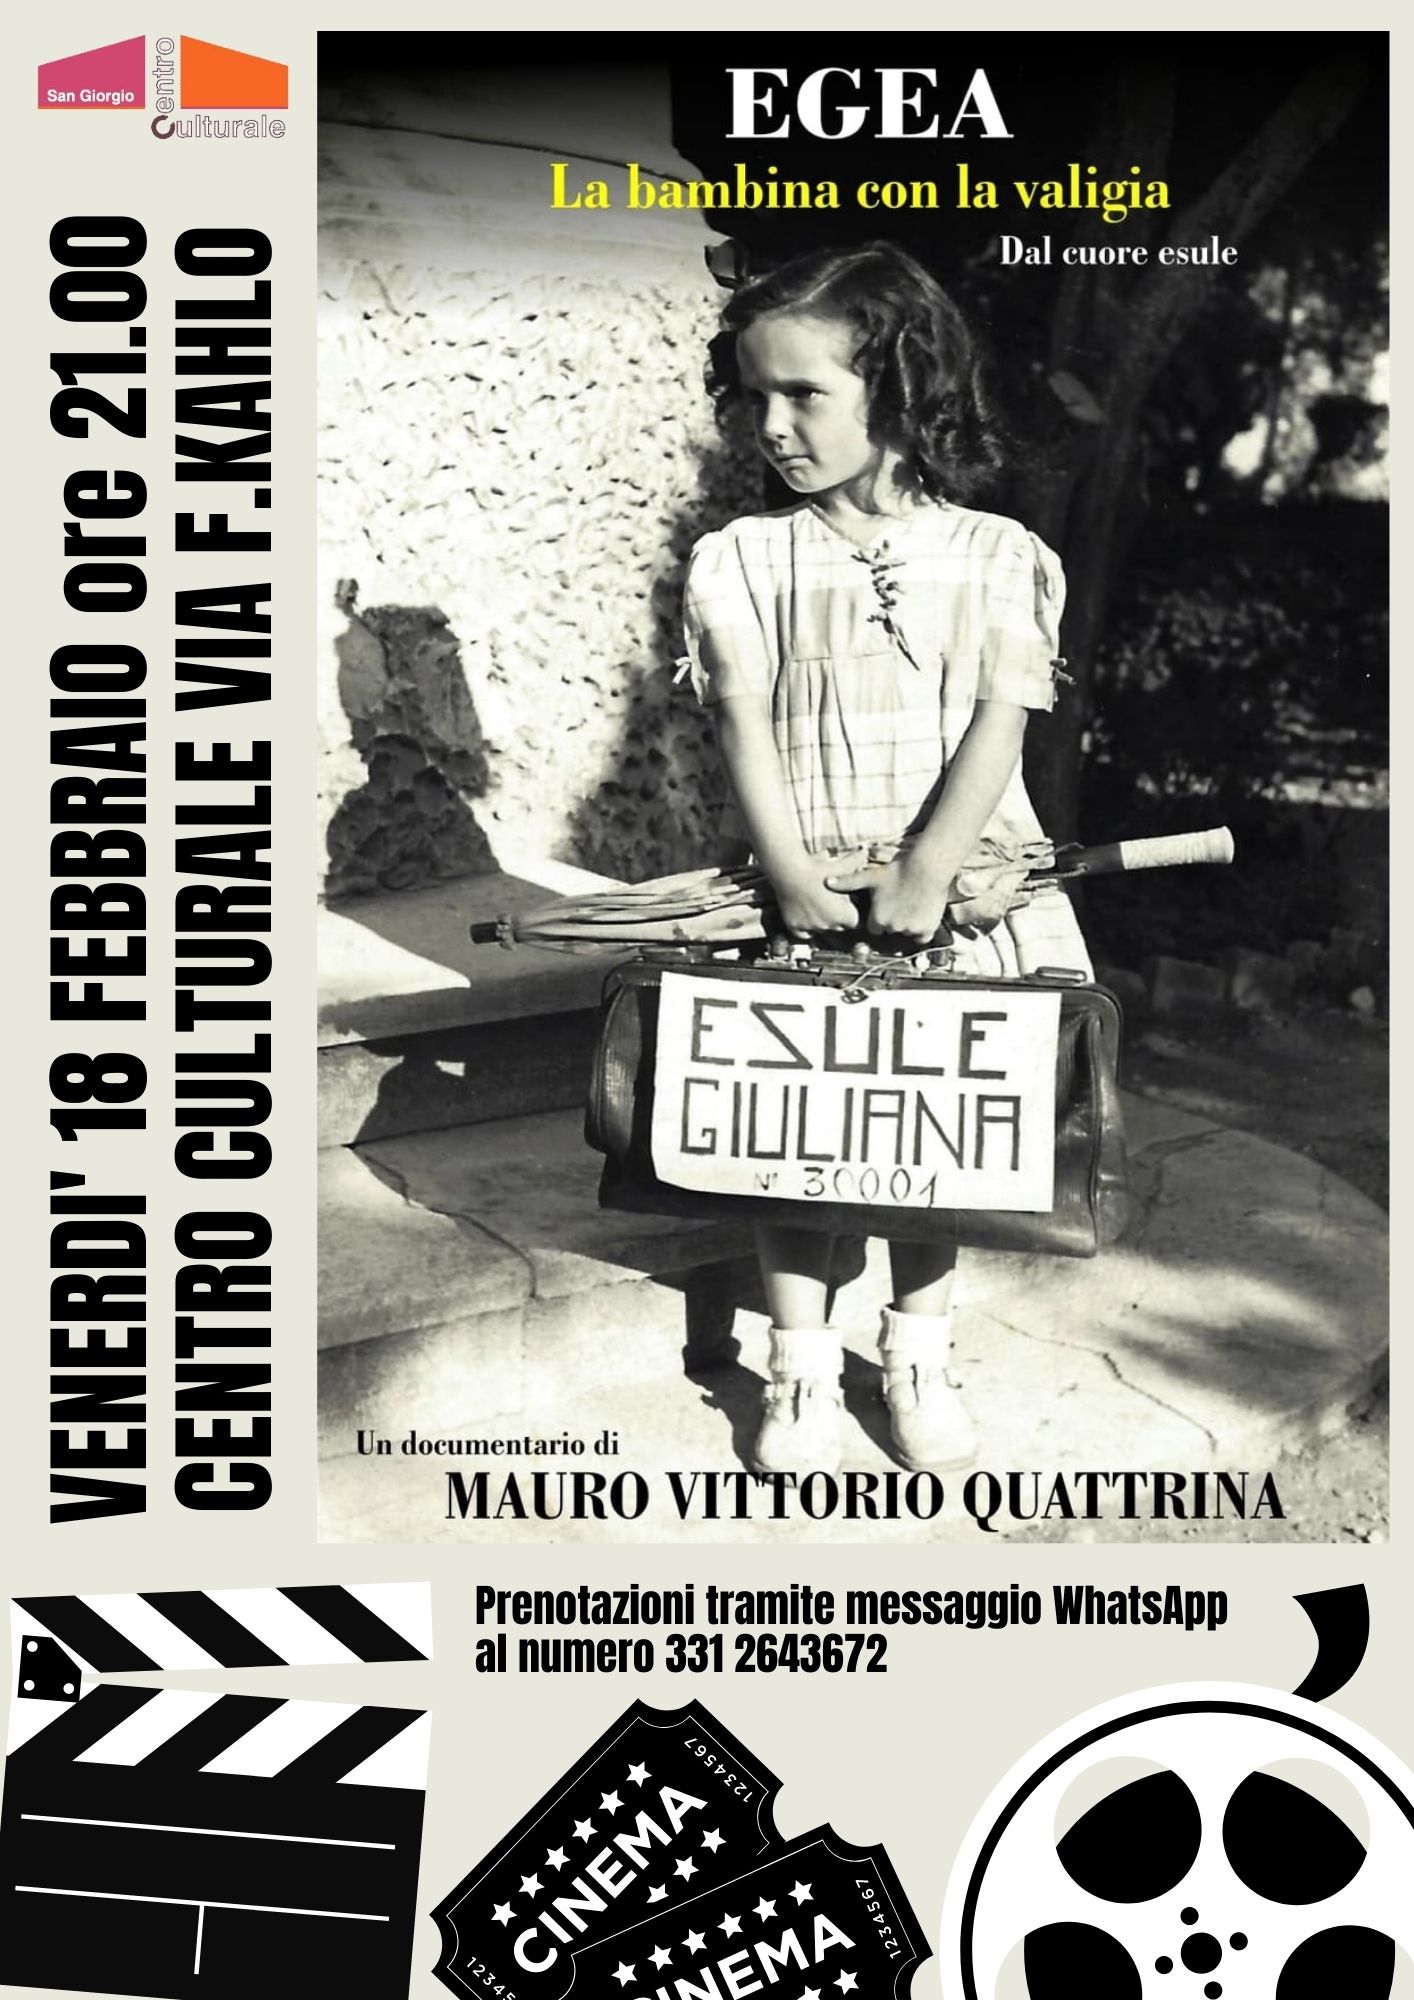 Egea, la bambina con la valigia dal cuore esule, a San Giorgio Bigarello  proiezione in ricordo delle foibe 